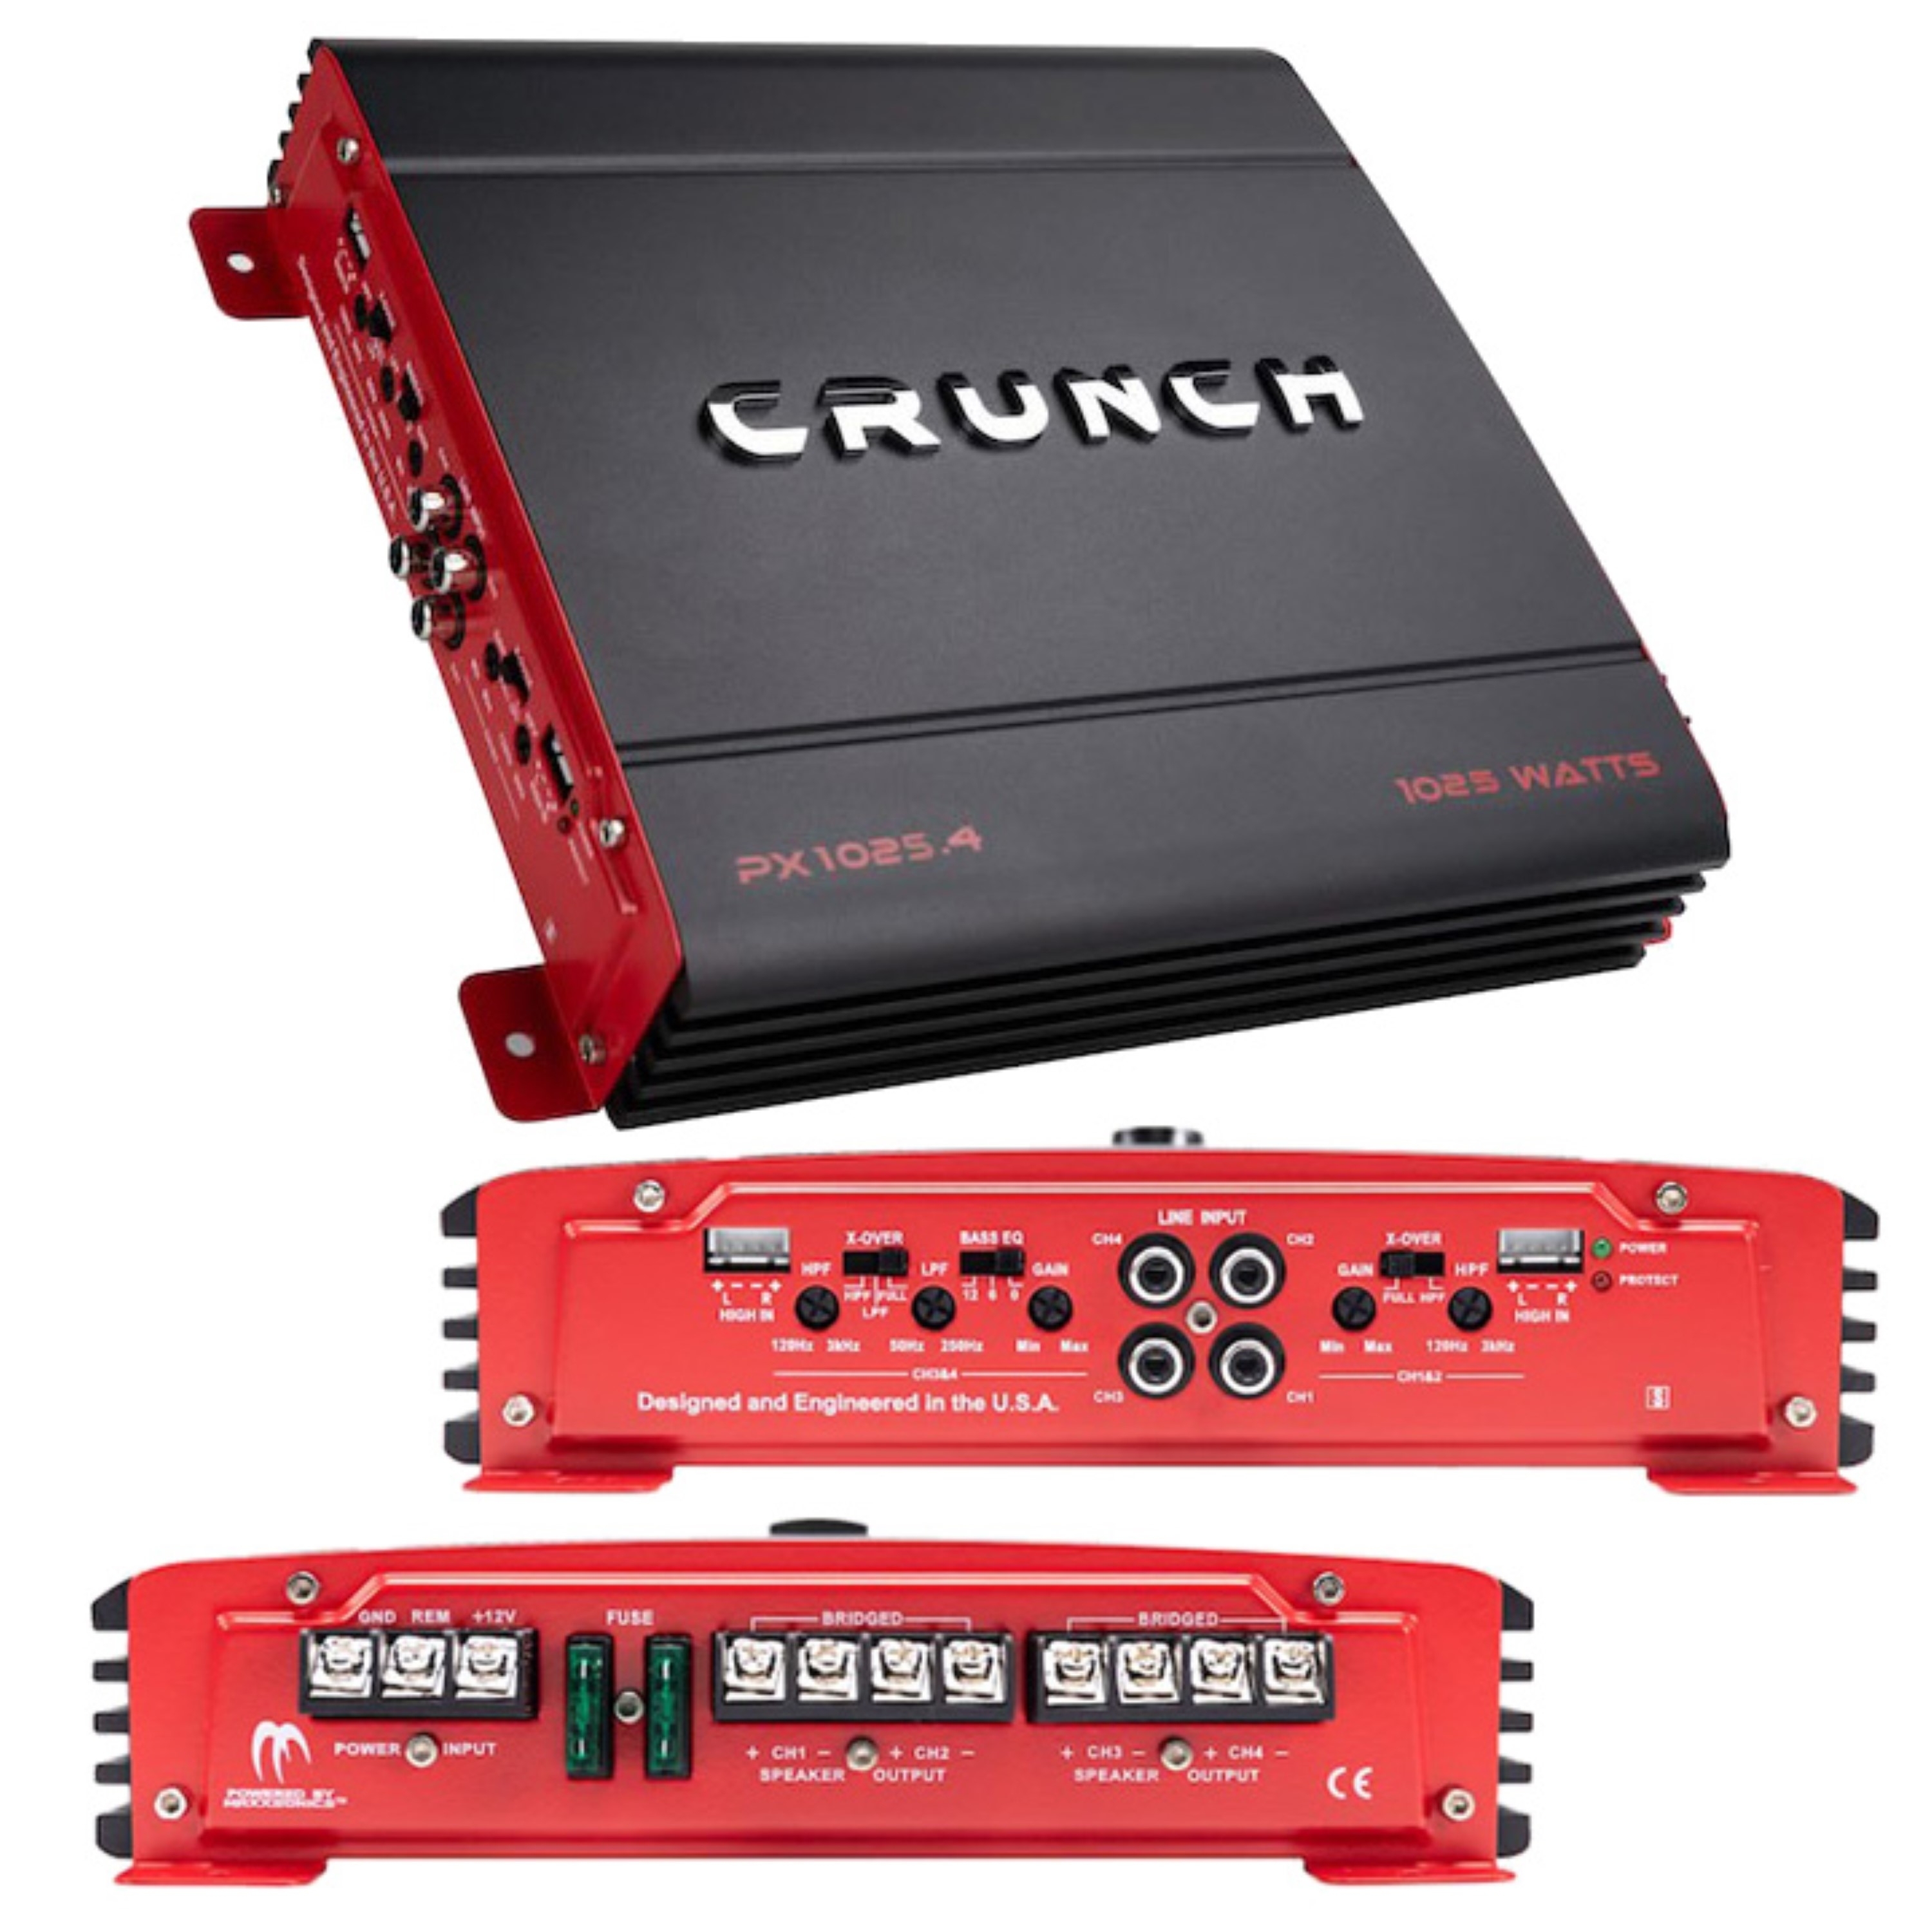 Crunch 1000 Watt 4-Channel Amplifier Car Audio Amp PX-1025.4